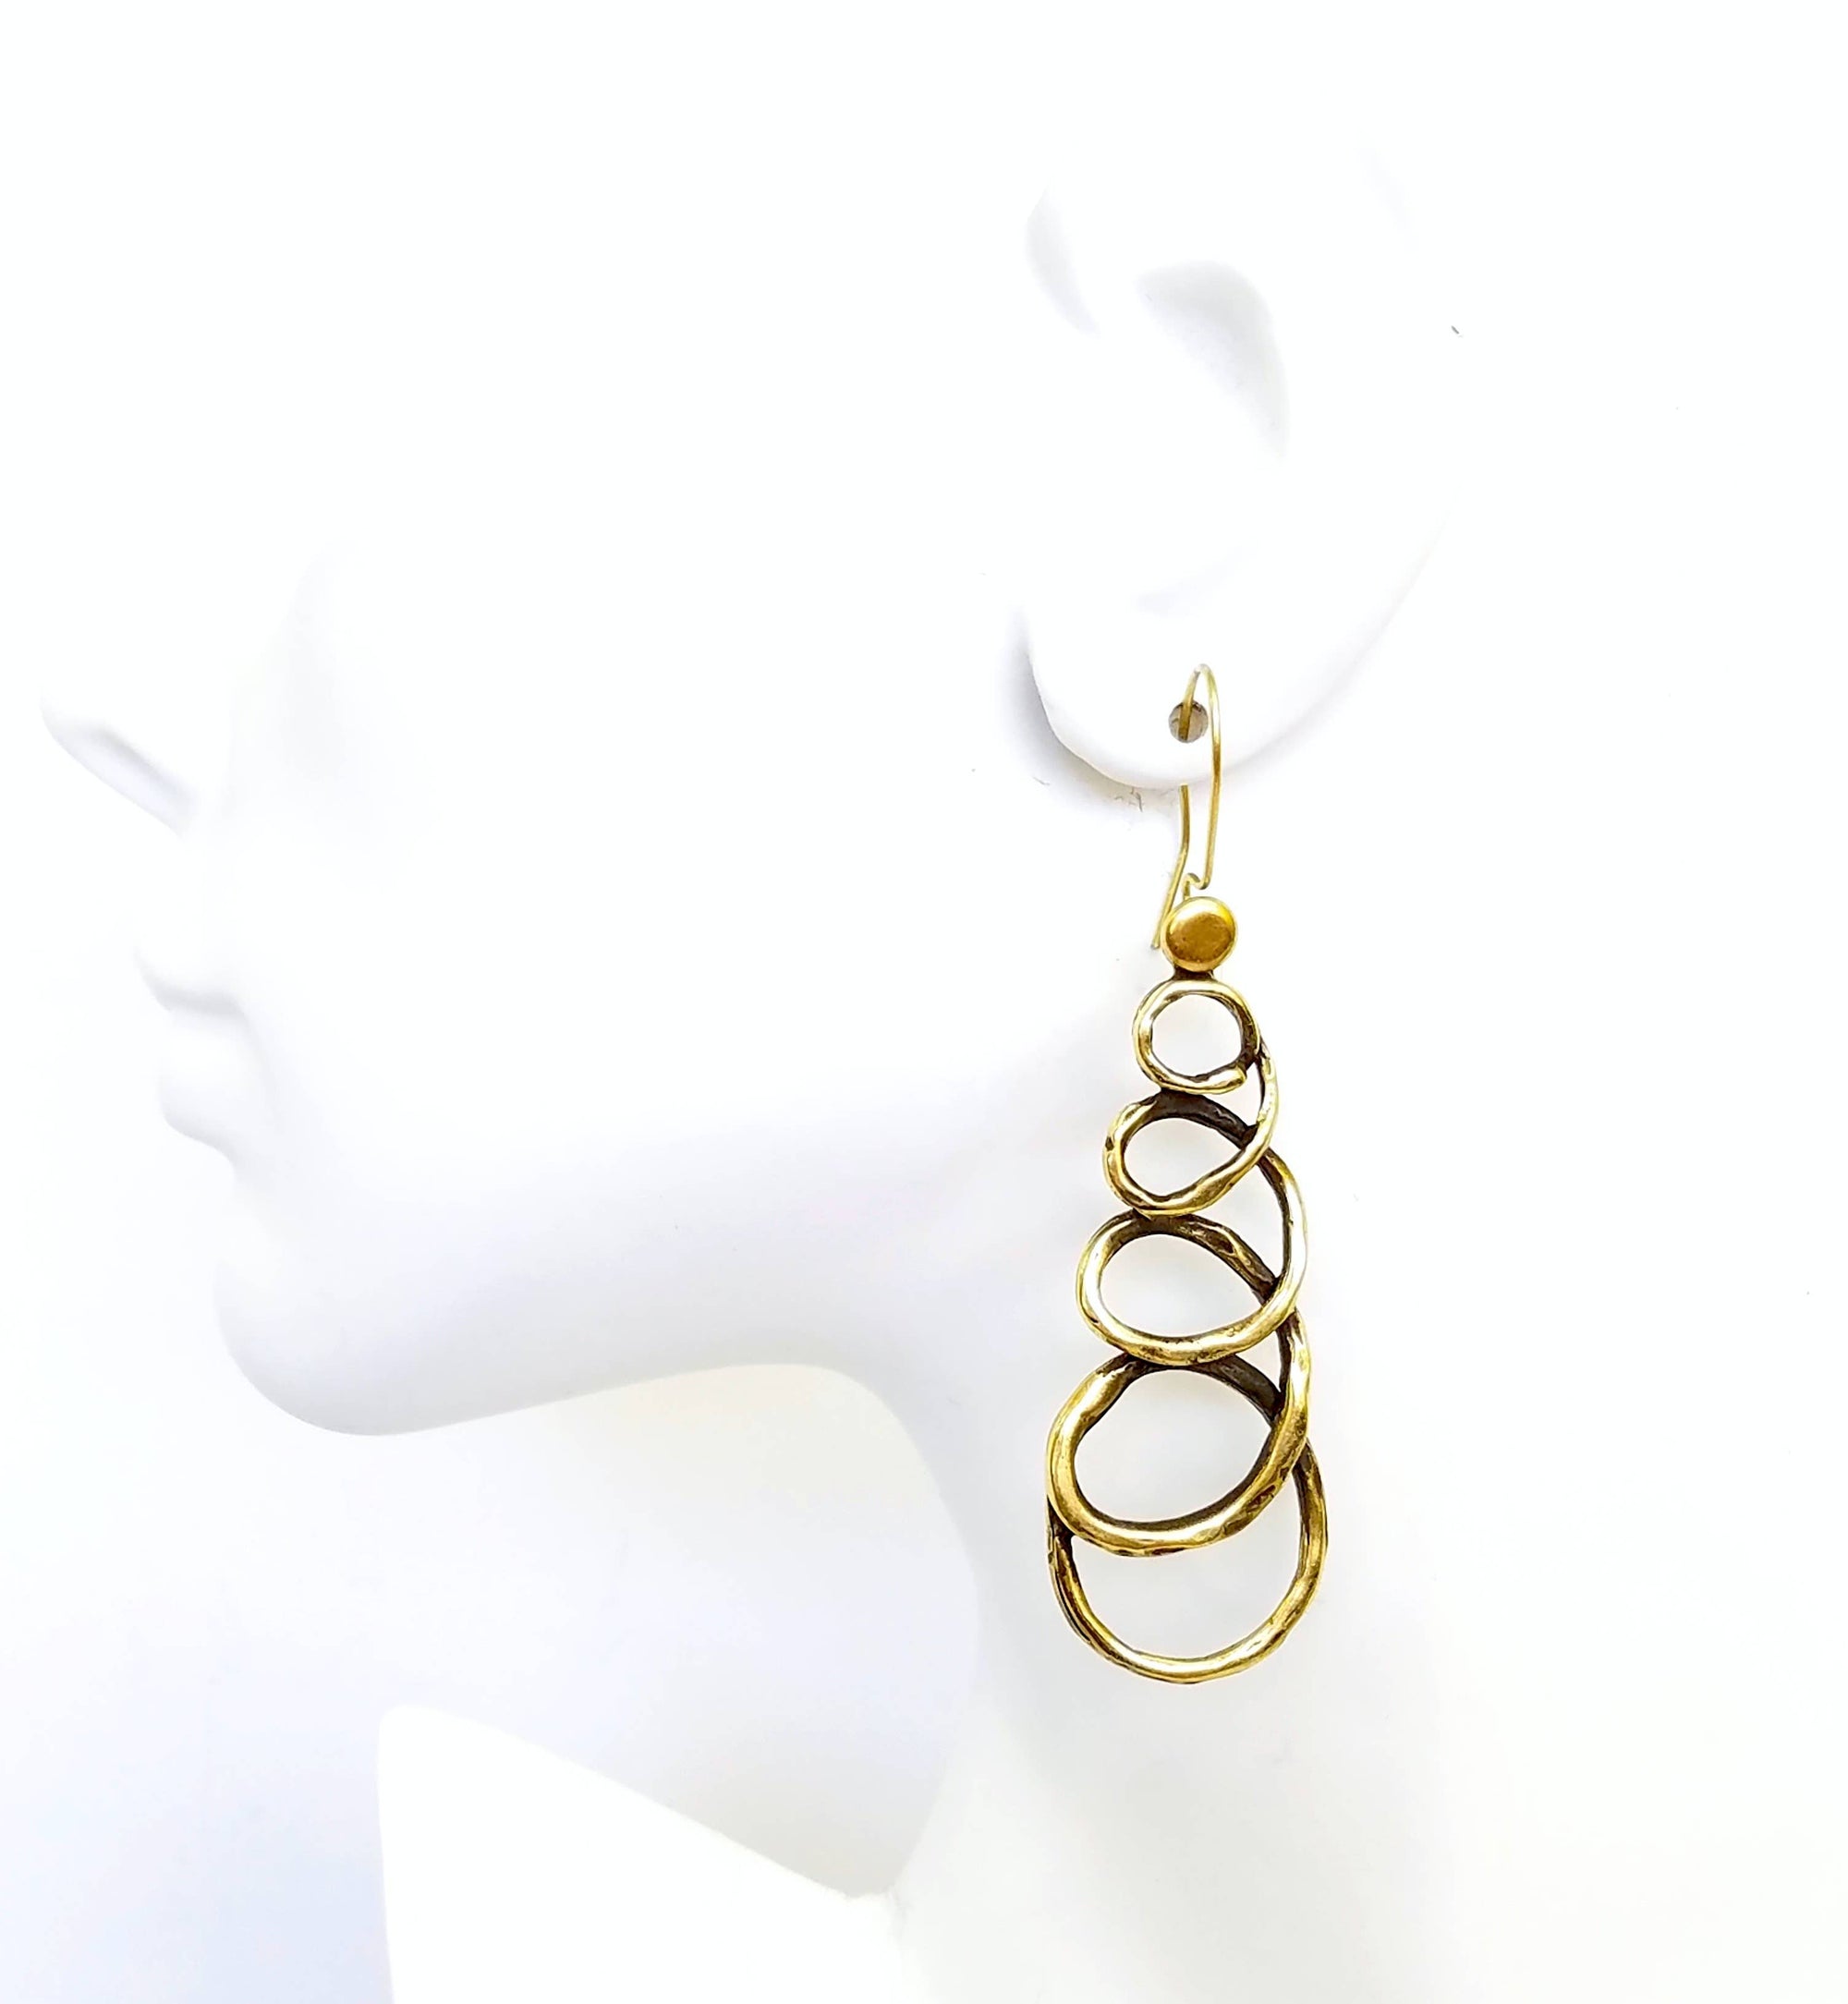 Bronze Loop ala Loop Earrings